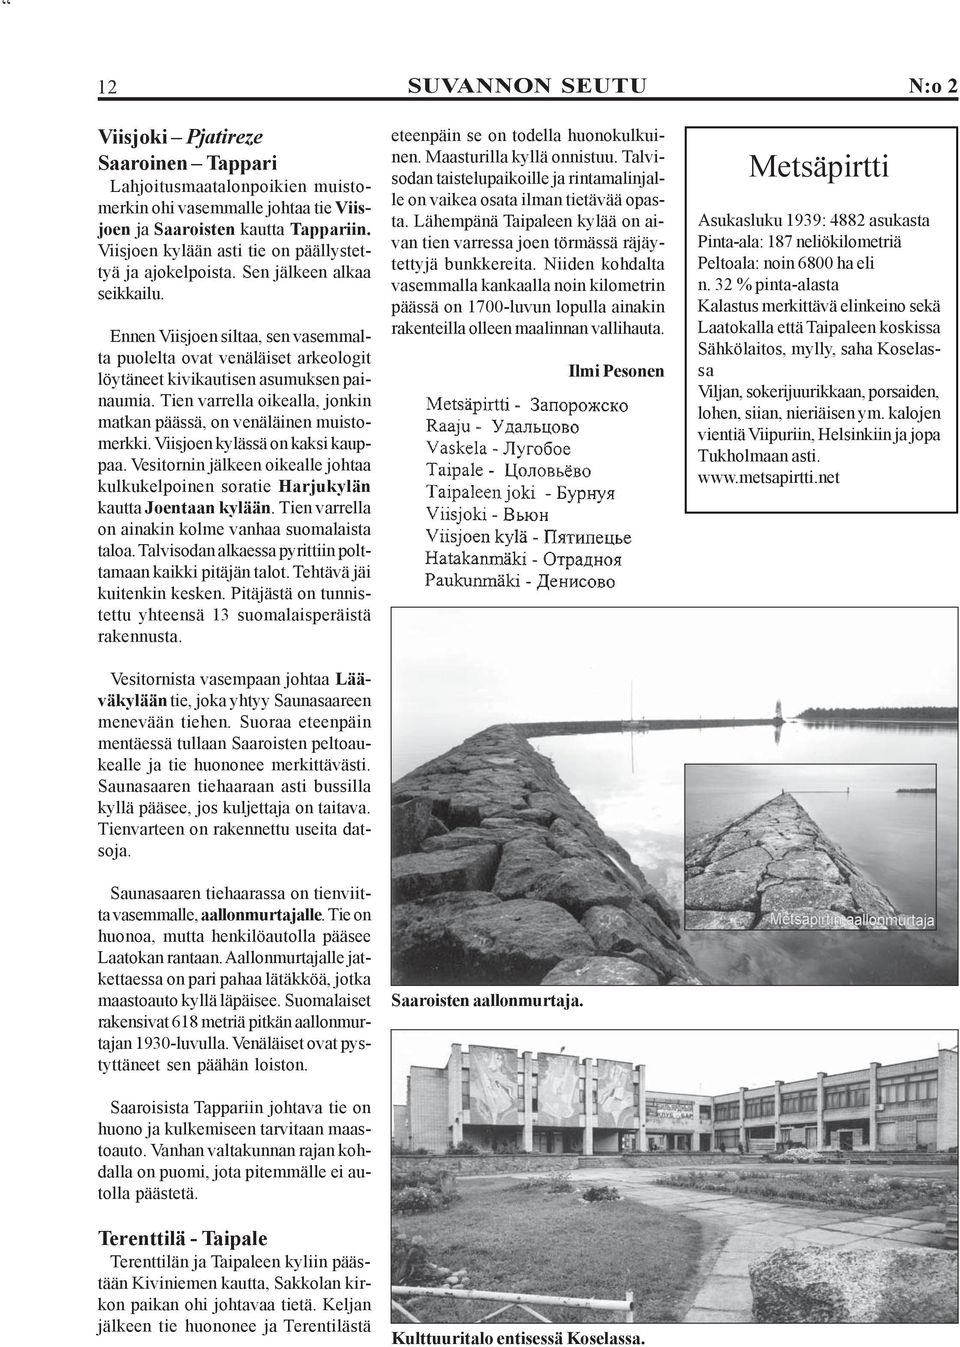 Ennen Viisjoen siltaa, sen vasemmalta puolelta ovat venäläiset arkeologit löytäneet kivikautisen asumuksen painaumia. Tien varrella oikealla, jonkin matkan päässä, on venäläinen muistomerkki.